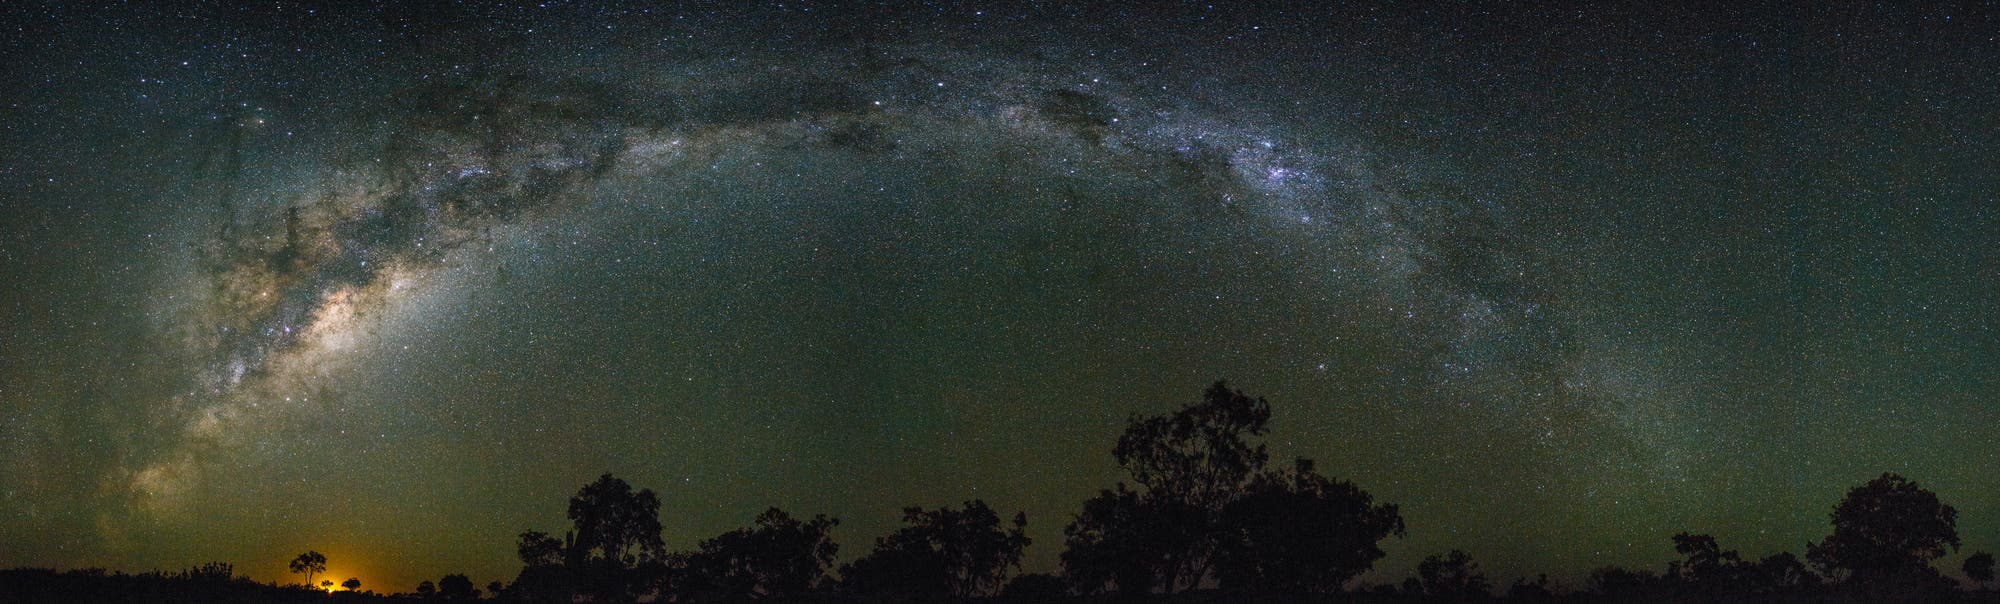 Milchstraßenbogen über dem australischen Outback mit Mondaufgang